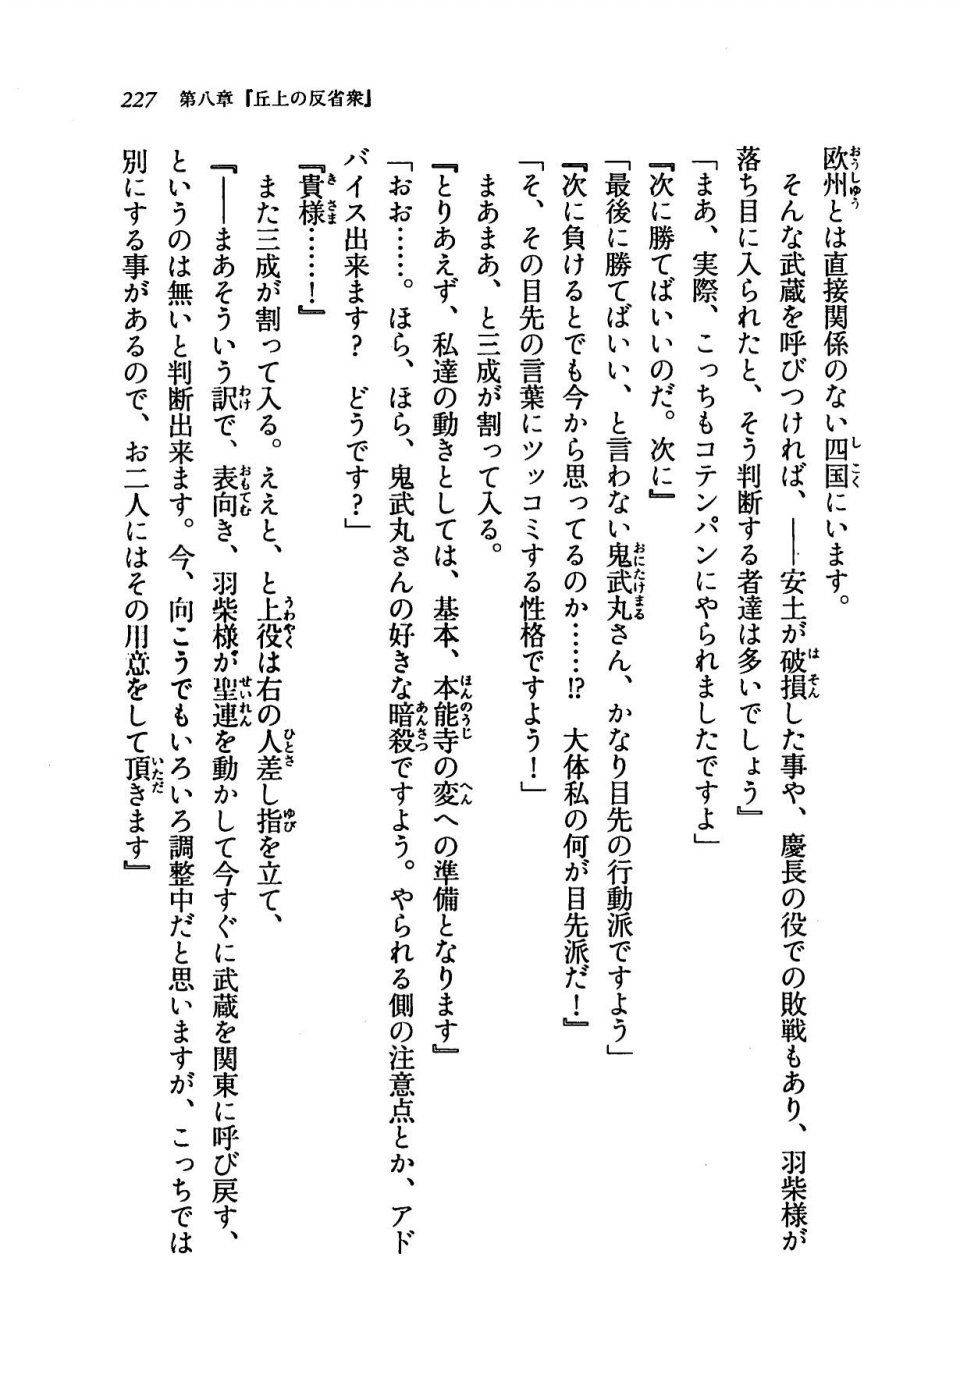 Kyoukai Senjou no Horizon LN Vol 19(8A) - Photo #227